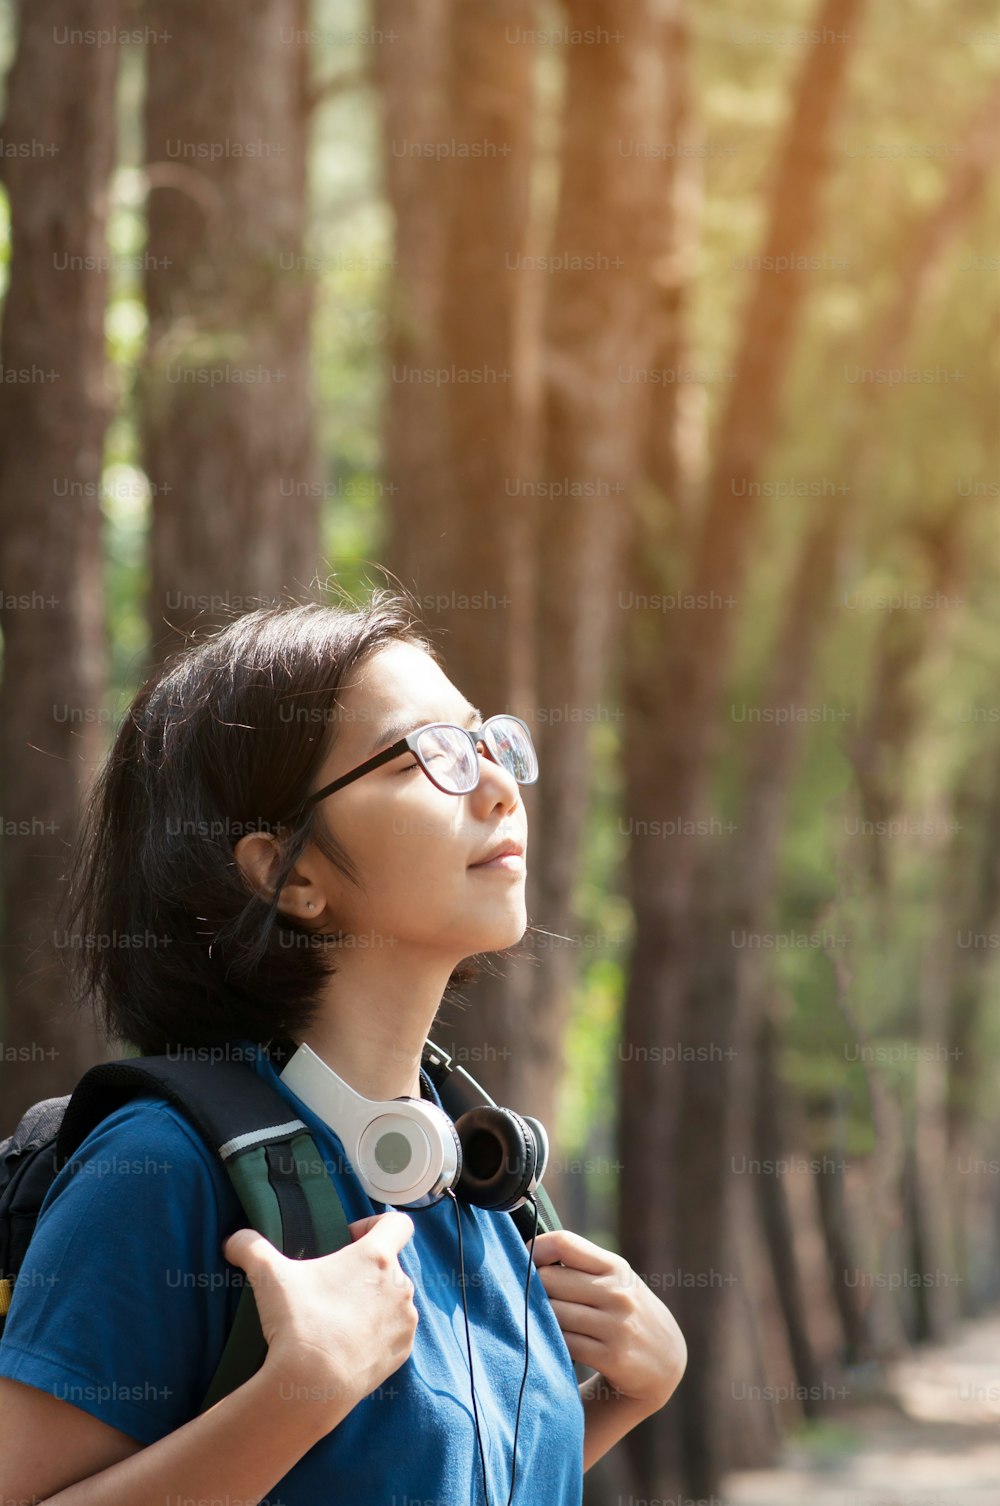 Escursionista donna con occhiali asiatici con zaino che respira aria fresca della natura. Bella ragazza con la cuffia che sorride sullo sfondo della natura.